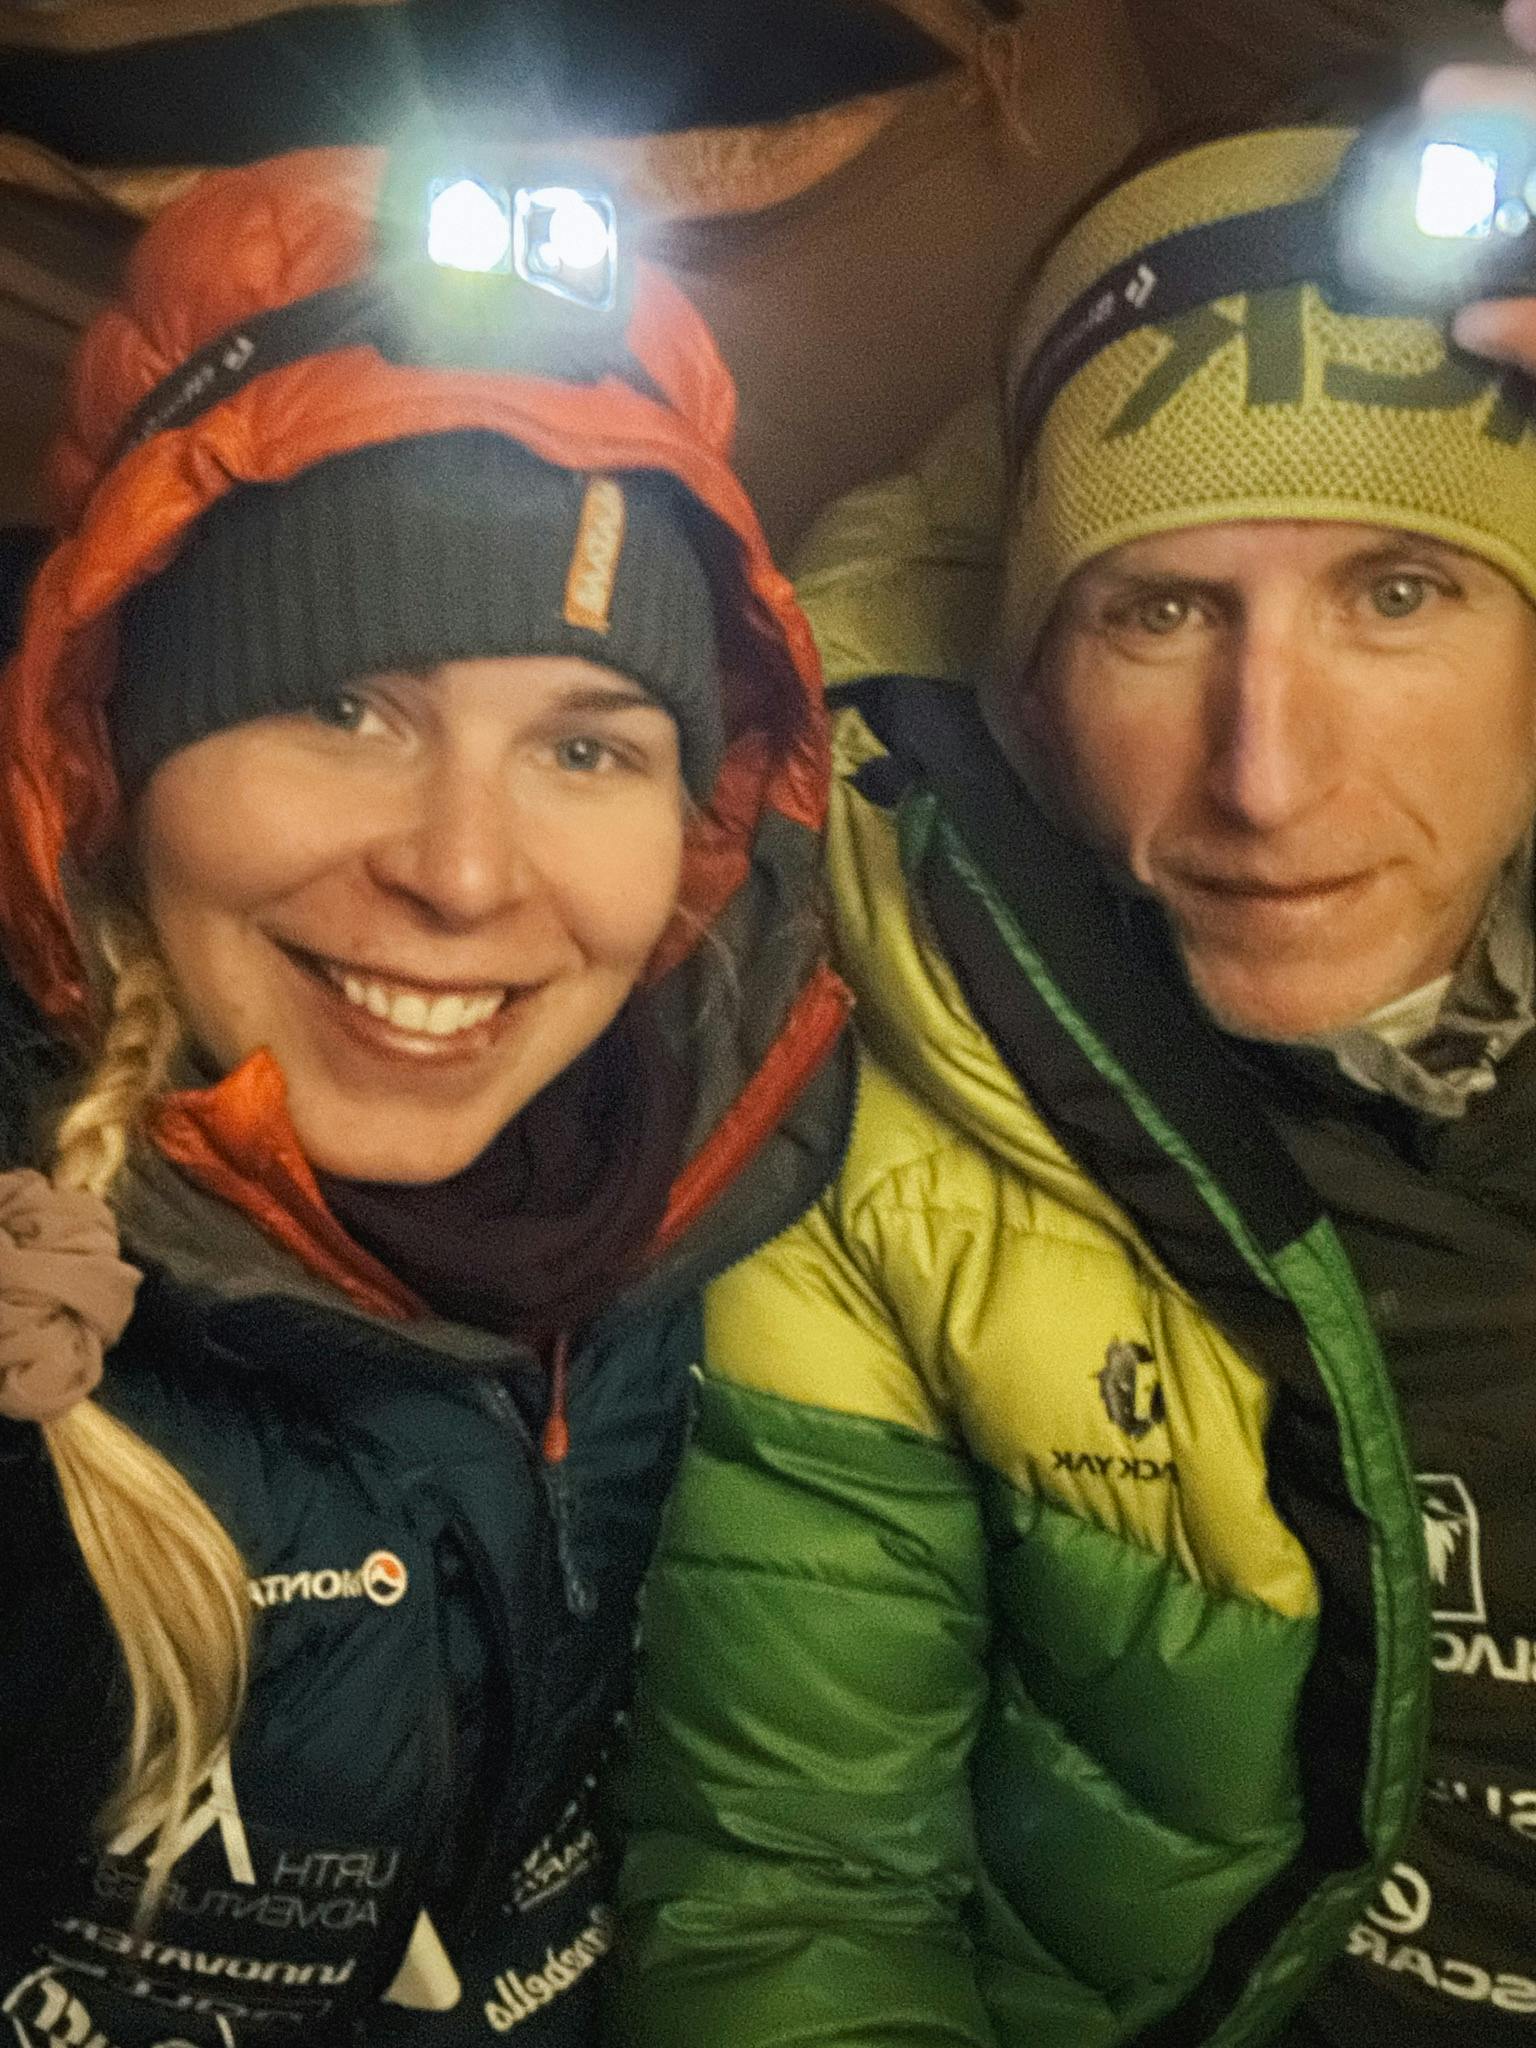 Emma Østergaard og Jakob Urth er makkerparret, der har nået Mount Everest. De får dog også hjælp af deres sherpaer.&nbsp;
